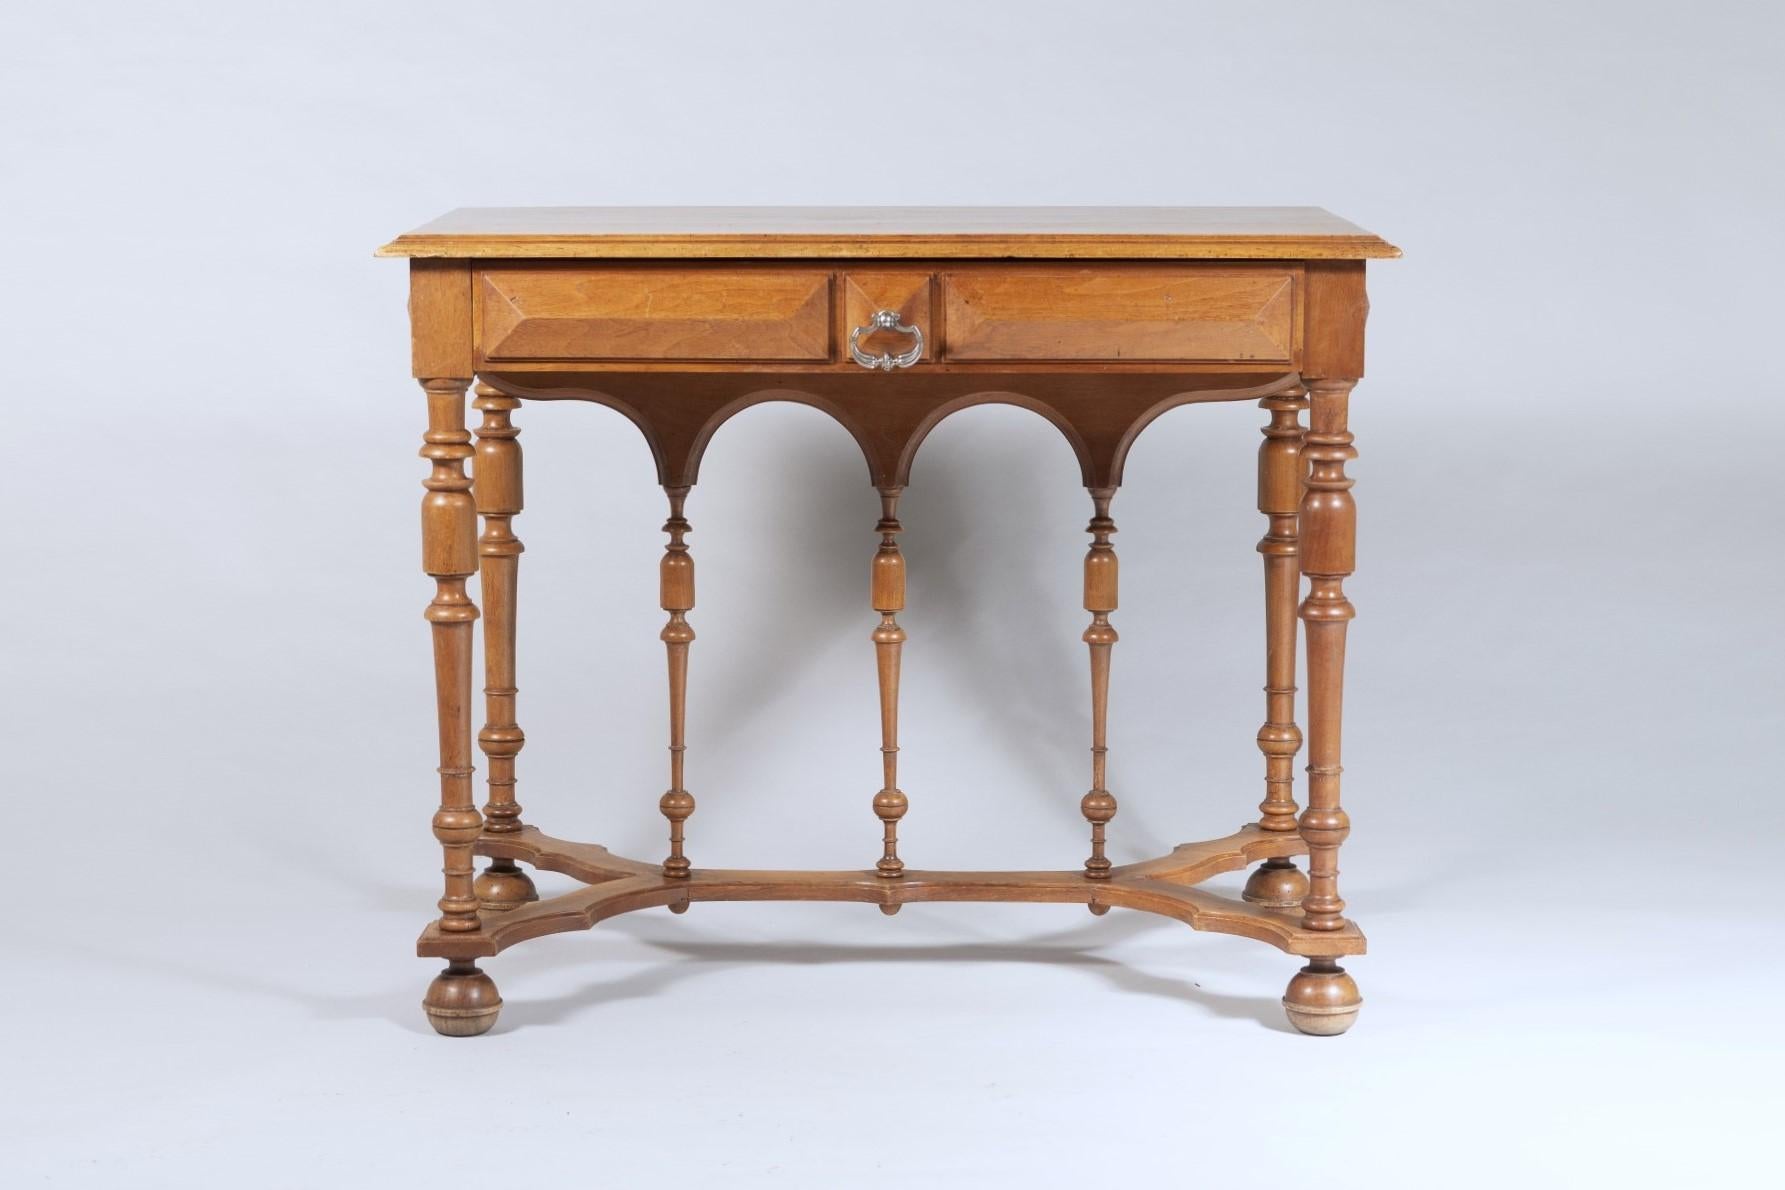 Ein sehr dekorativer Beistelltisch aus Nussbaum des 19. Jahrhunderts mit Friesschublade.
Der Tisch zeigt eine wunderbare Handwerkskunst, mit geometrischer Vertäfelung auf dem Fries, vier balusterförmigen Beinen und passenden dekorativen Stützen auf